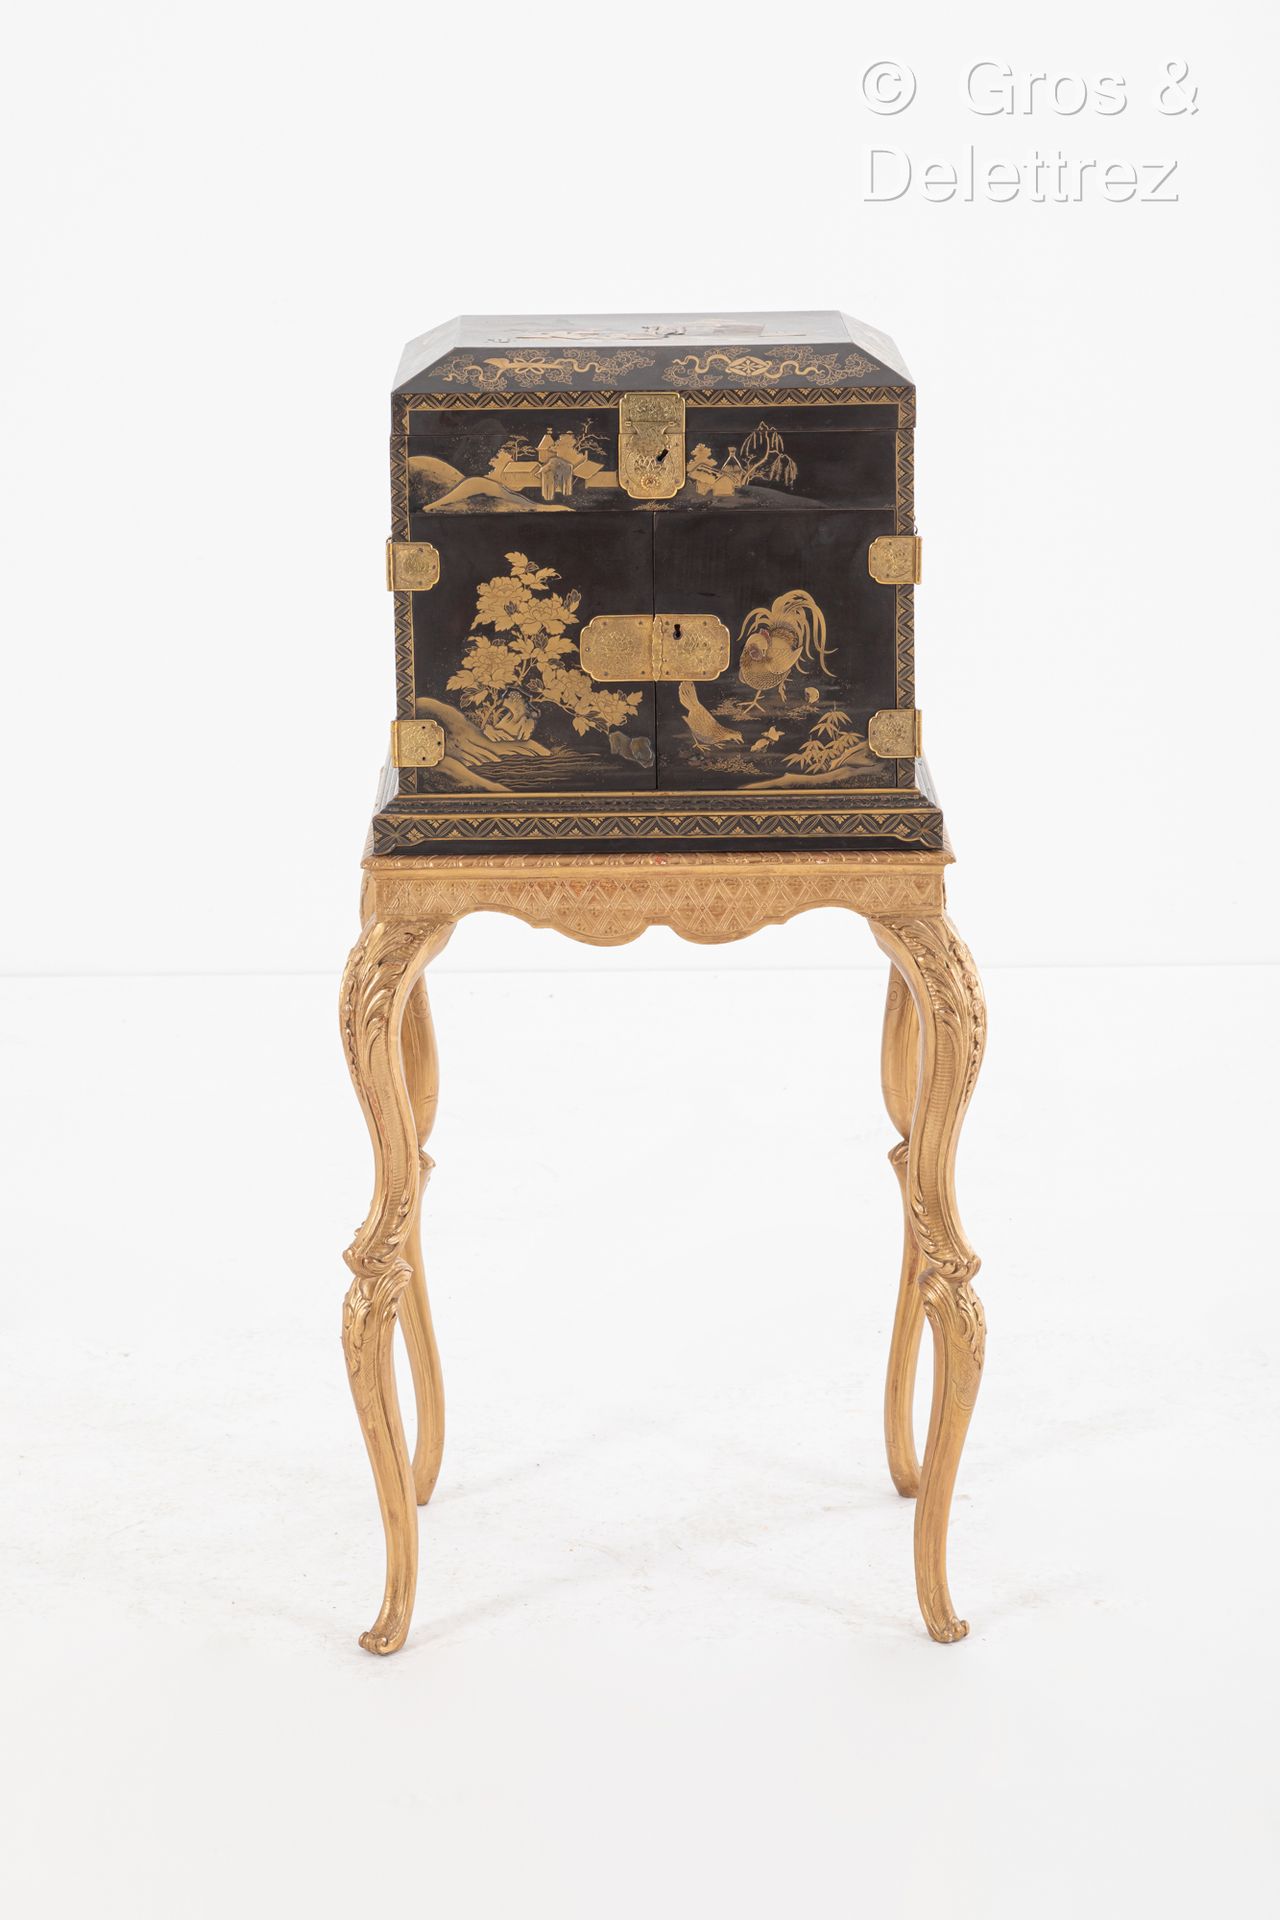 Null JAPON, période Edo, XVIIIe-XIXe siècle
Cabinet en laque noir et or, rehauss&hellip;